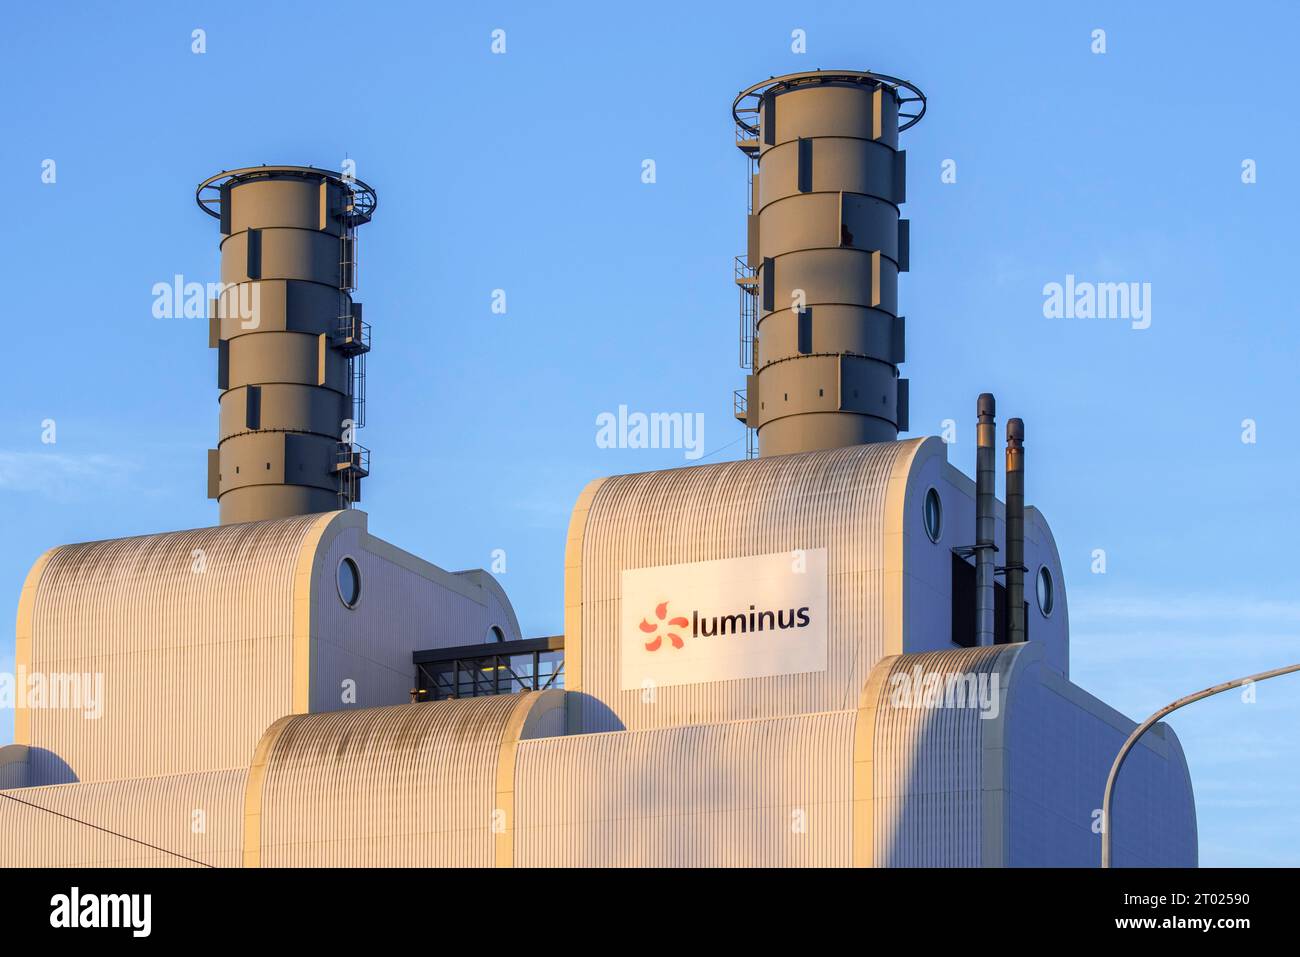 Central eléctrica de ciclo combinado Luminus / Centrale Turbine - Gaz - Vapeur / TGV para la producción de electricidad en Seraing, provincia de Lieja, Bélgica Foto de stock